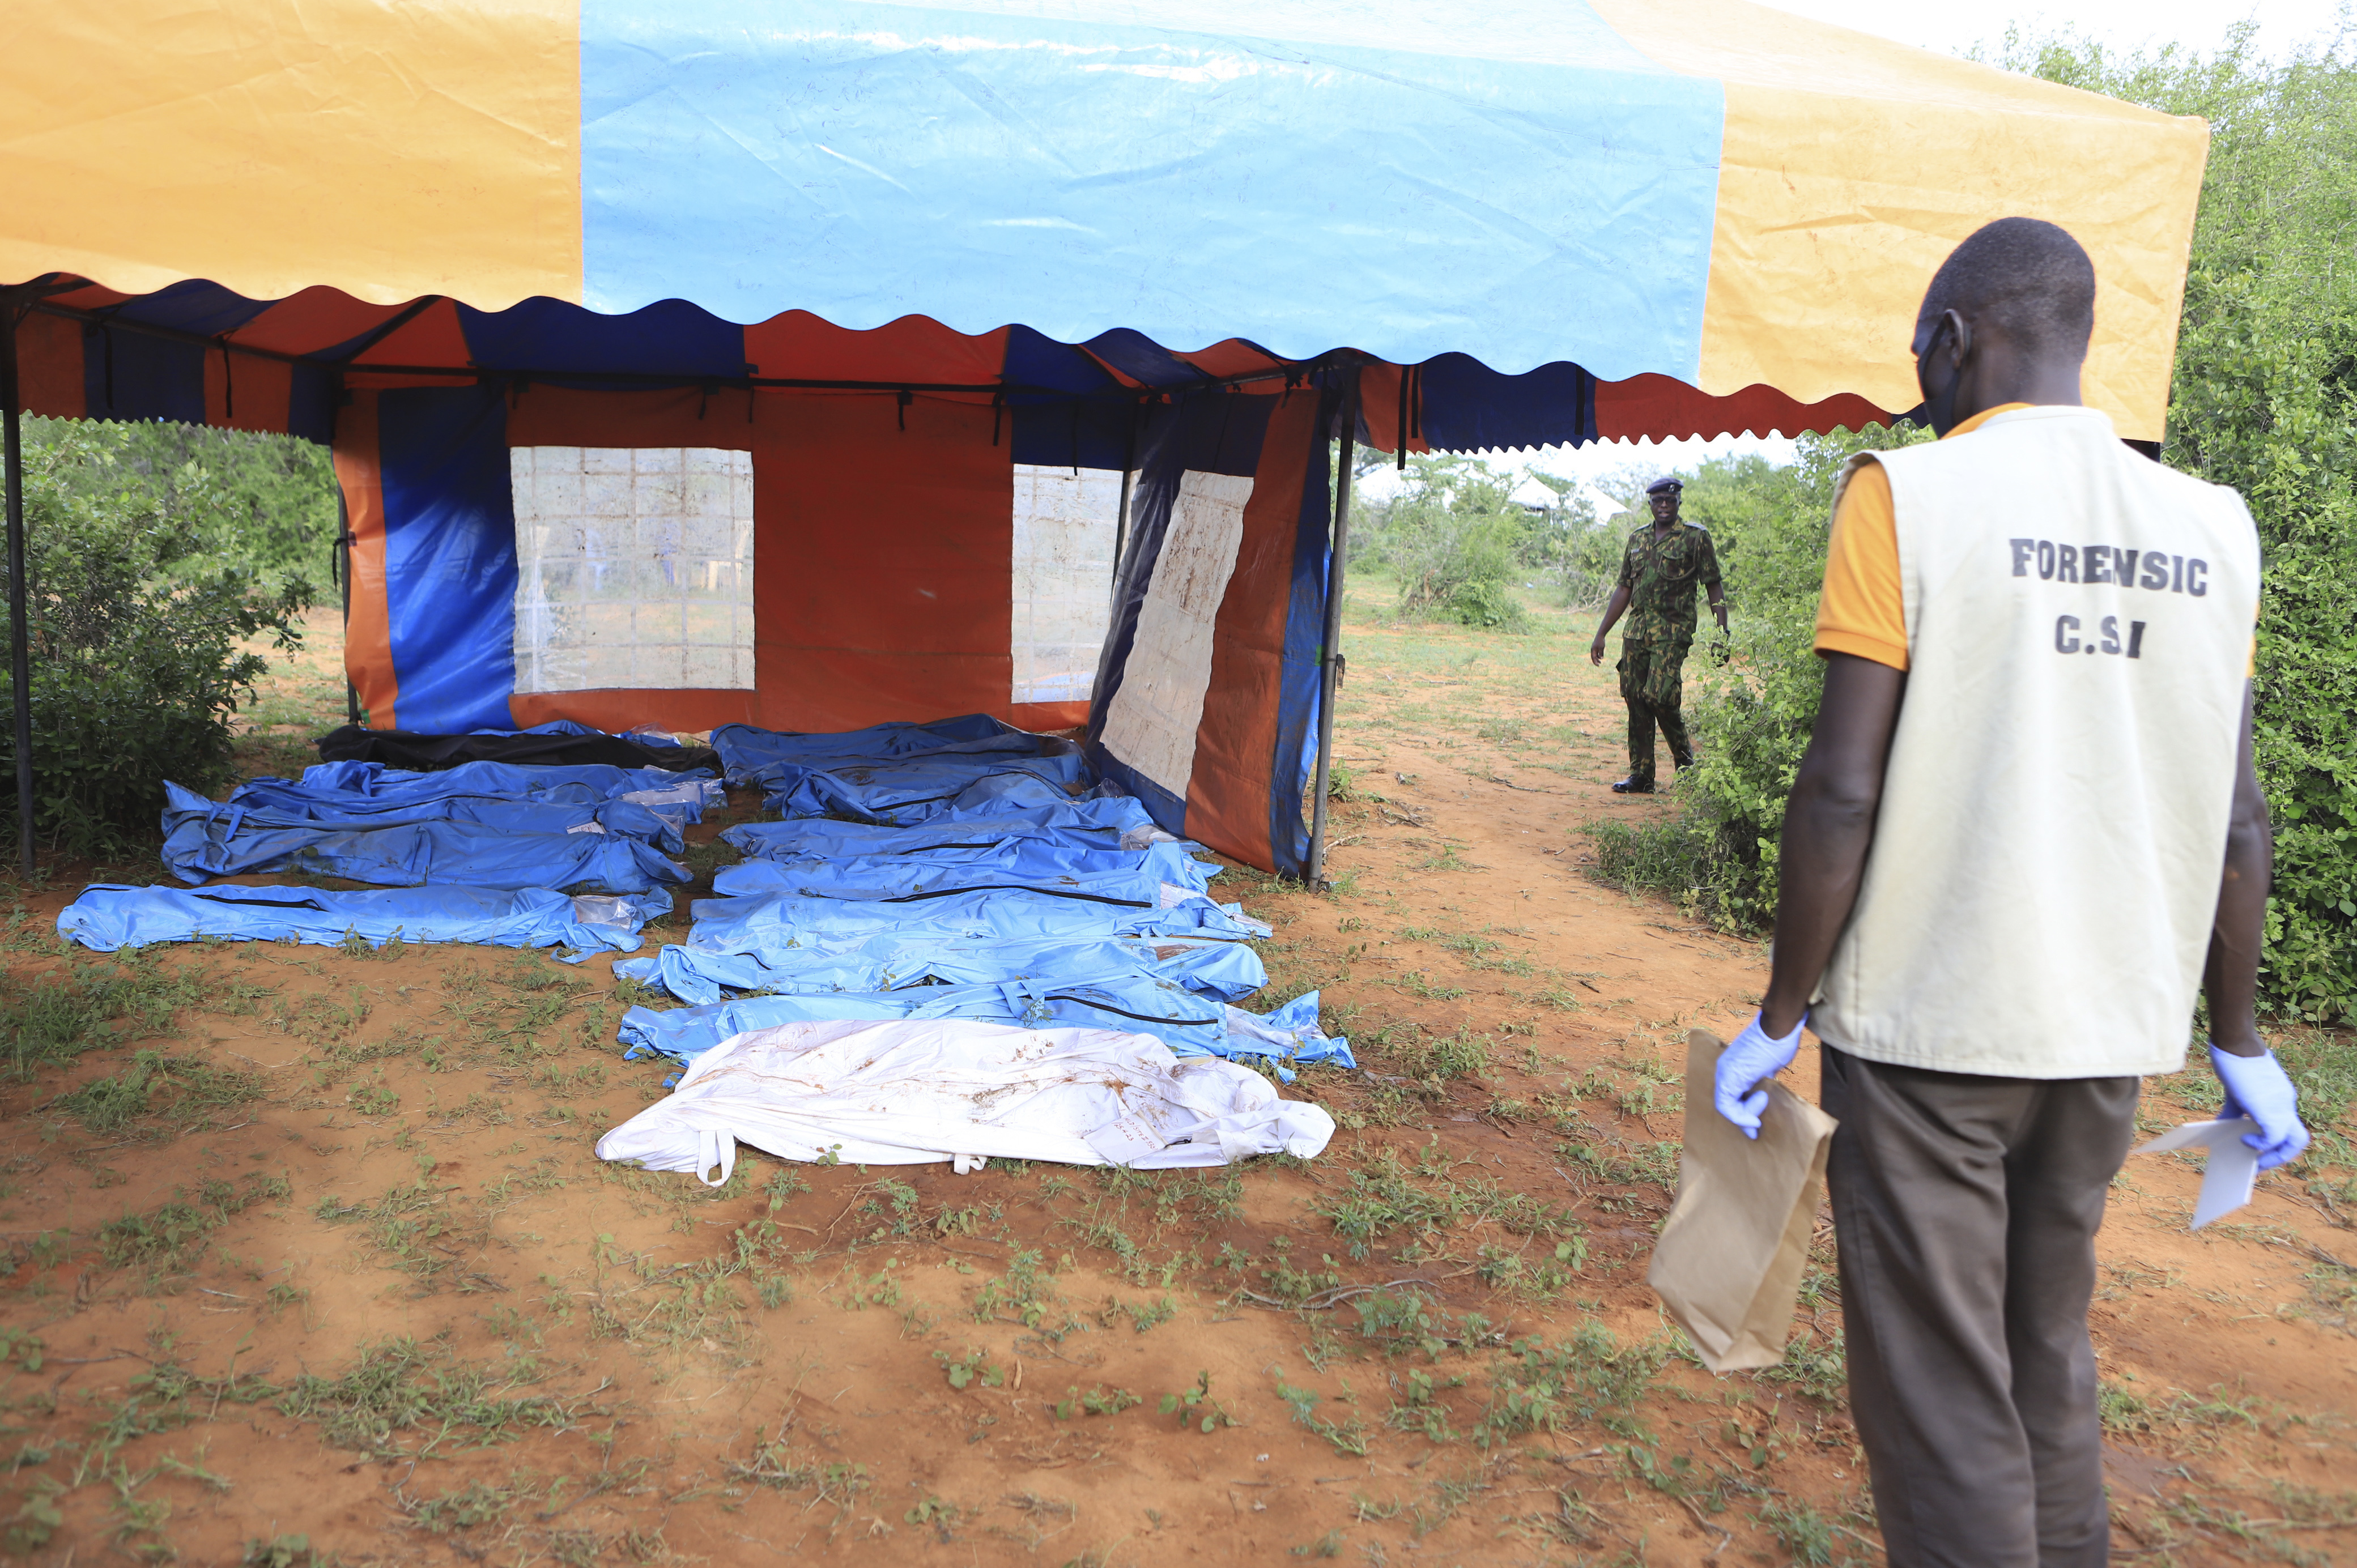 Restos de personas exhumadas de una hacienda cerca de Malindi, Kenia  (Foto AP)